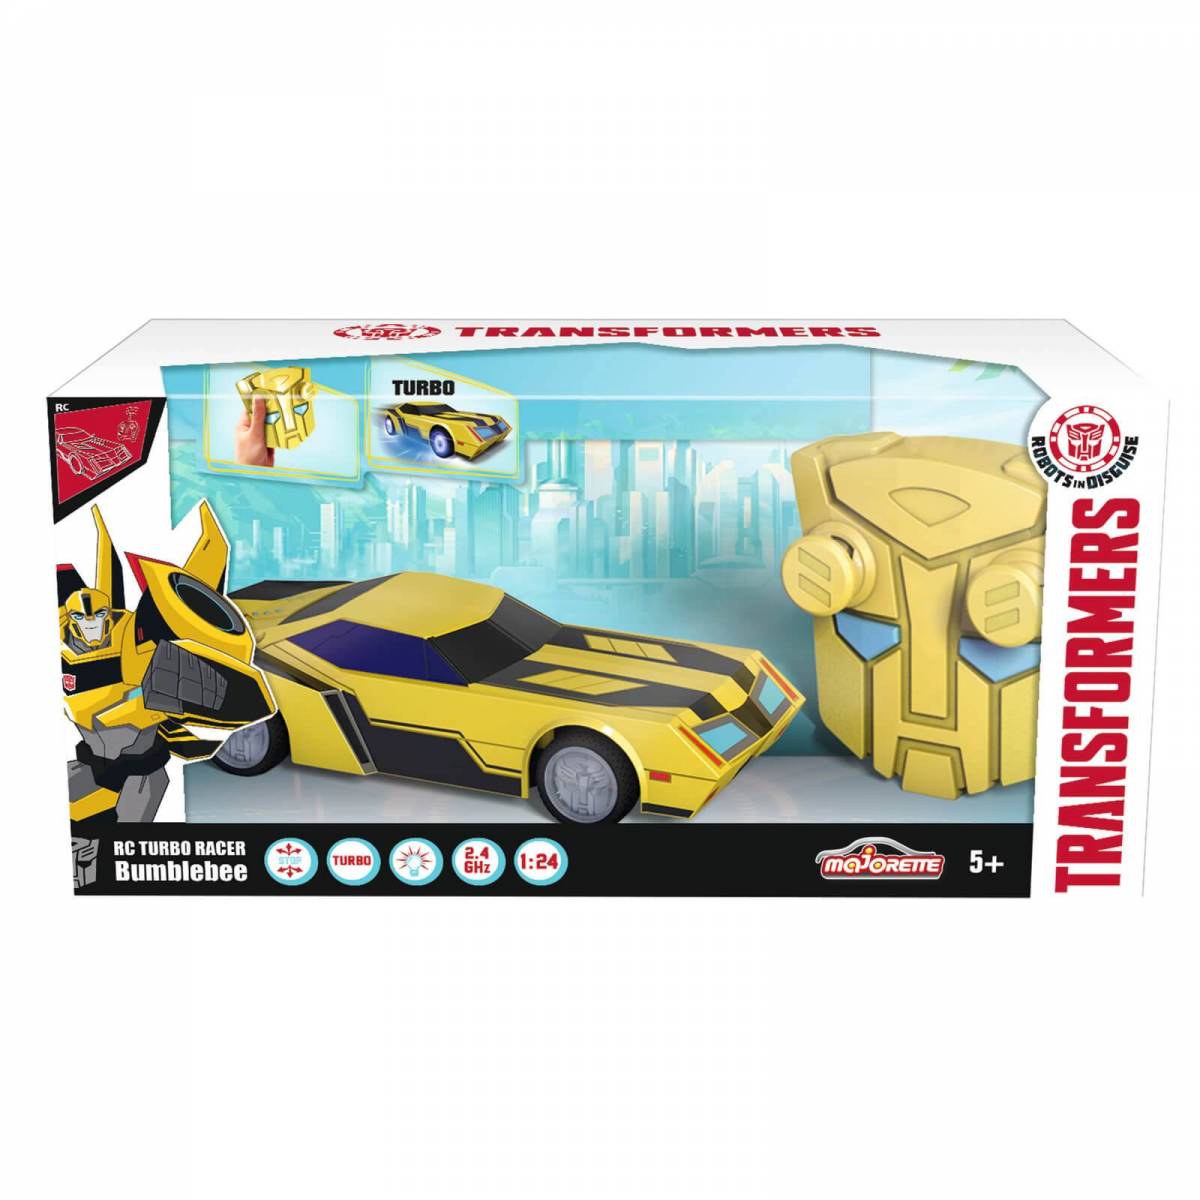 Transformers - Transformers Jouets - 2 en 1 Transformers - Robot voiture